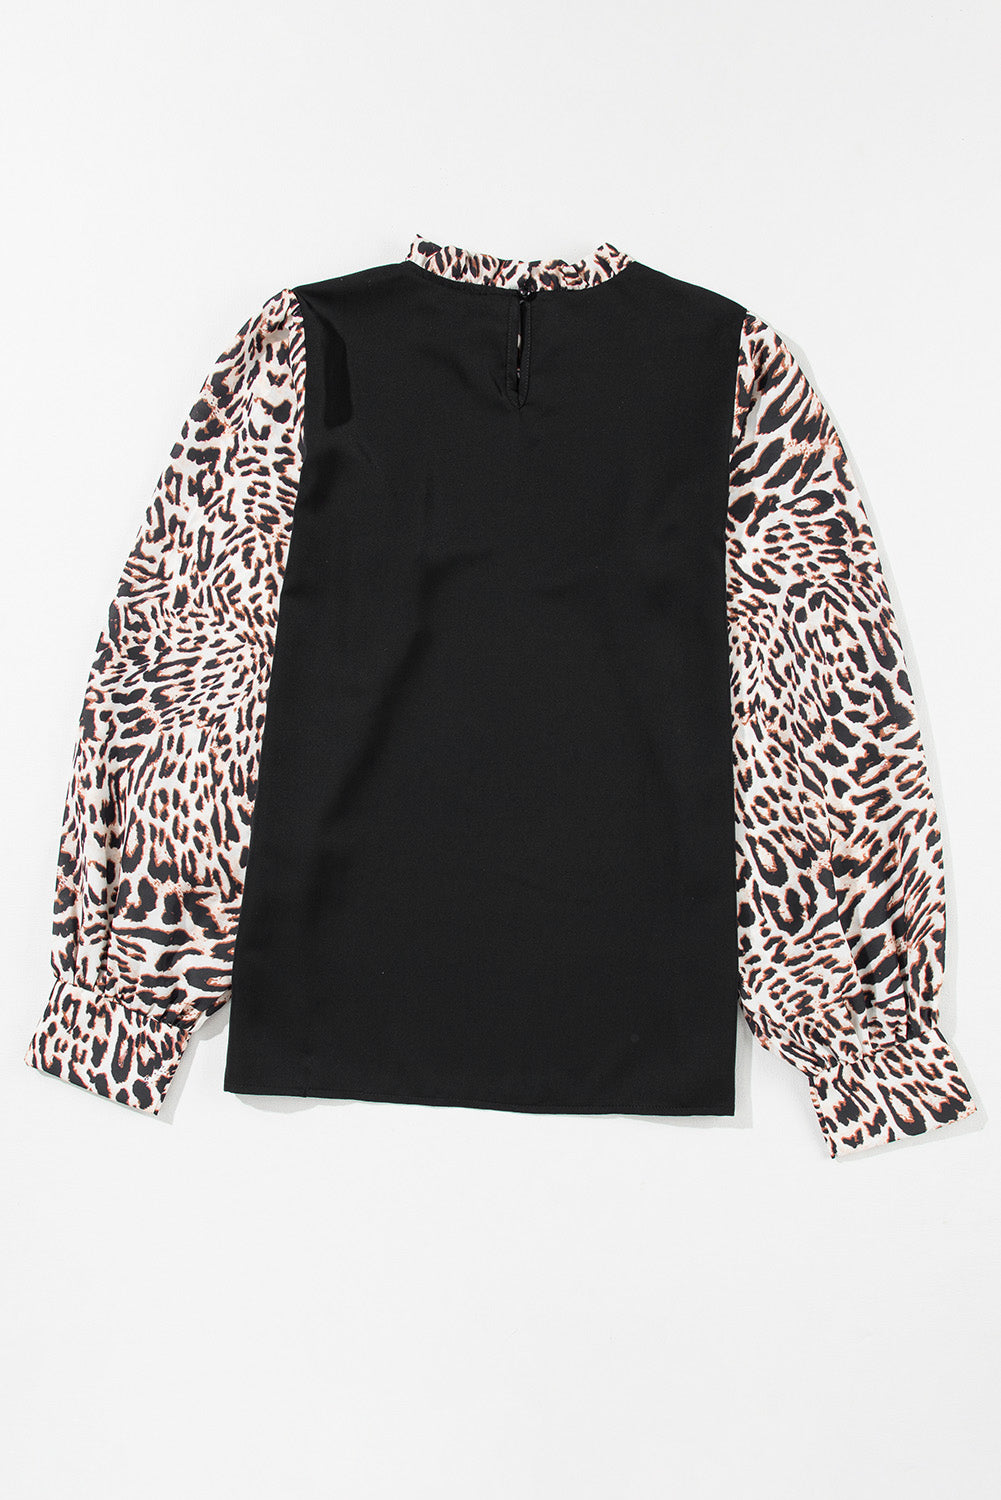 Črna kontrastna bluza z leopardjim vzorcem in lantern rokavi